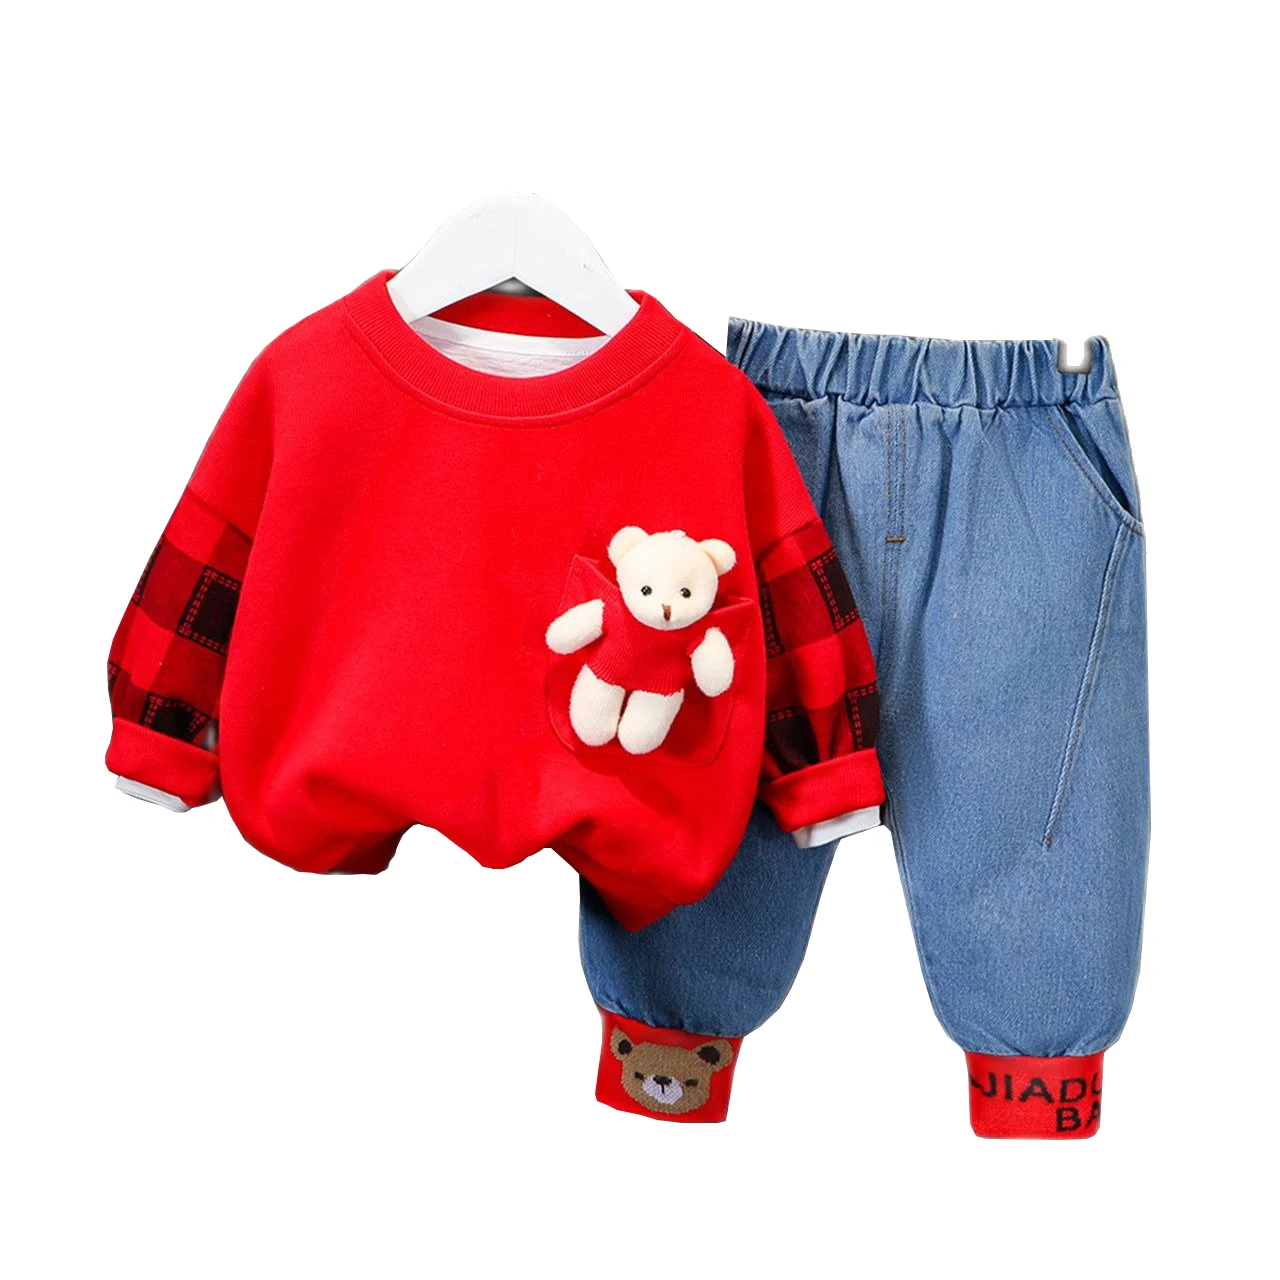 Детская одежда От 1 до 4 лет мальчиков модная футболка с рисунком медведя + синие